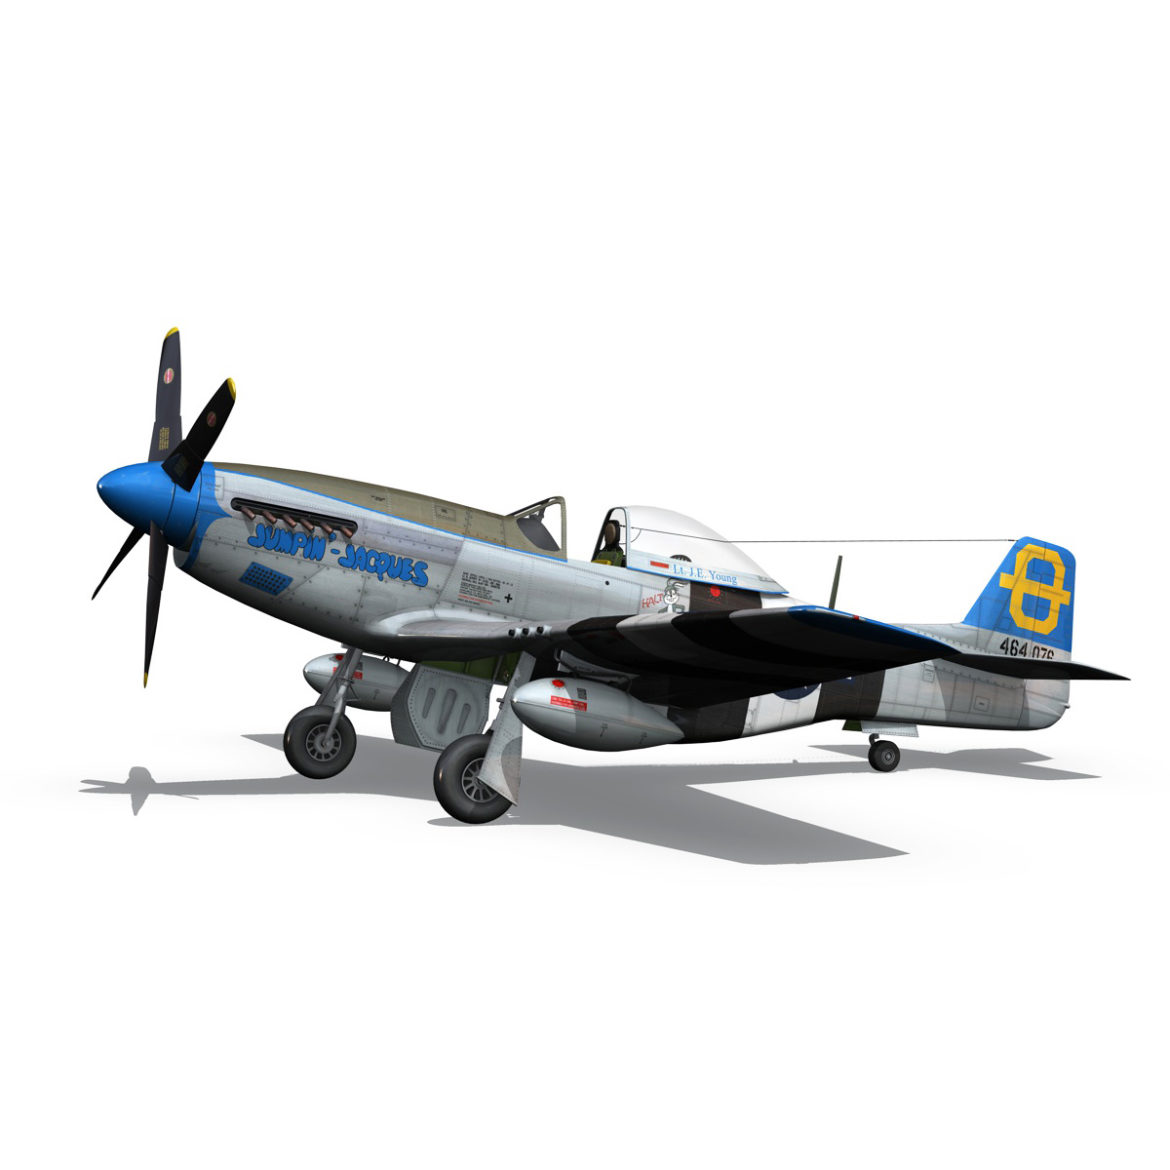 north american p-51d mustang – jumpin jacques 3d model fbx c4d lwo obj 294331